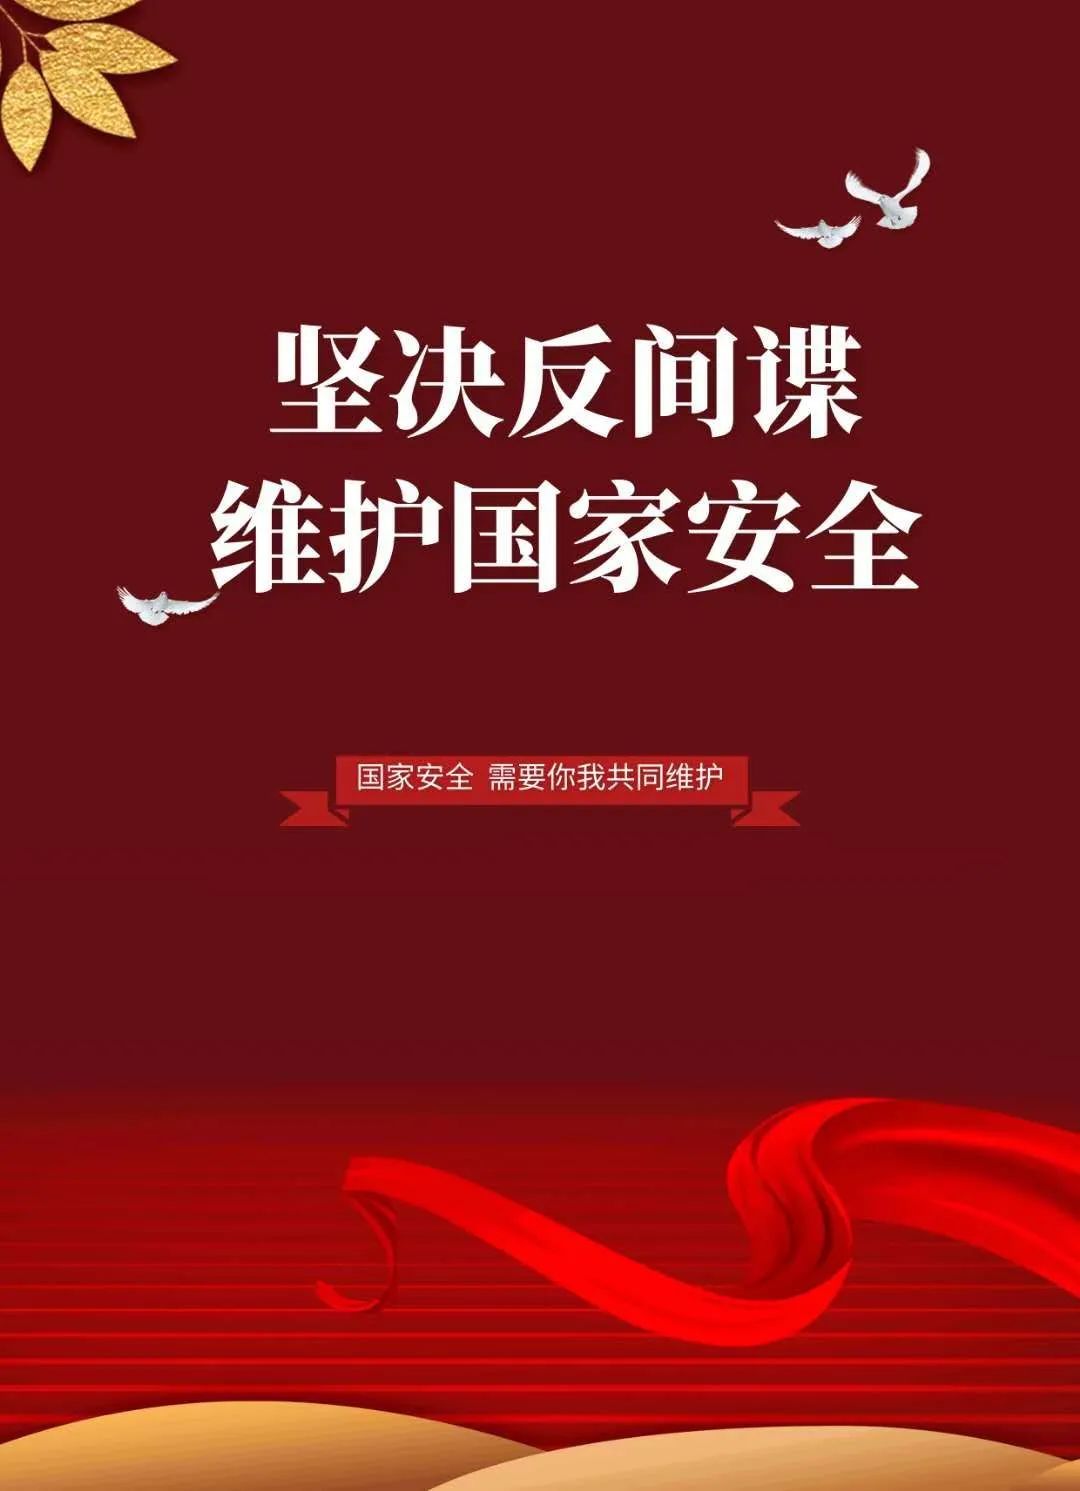 中华人民共和国反间谍法颁布六周年